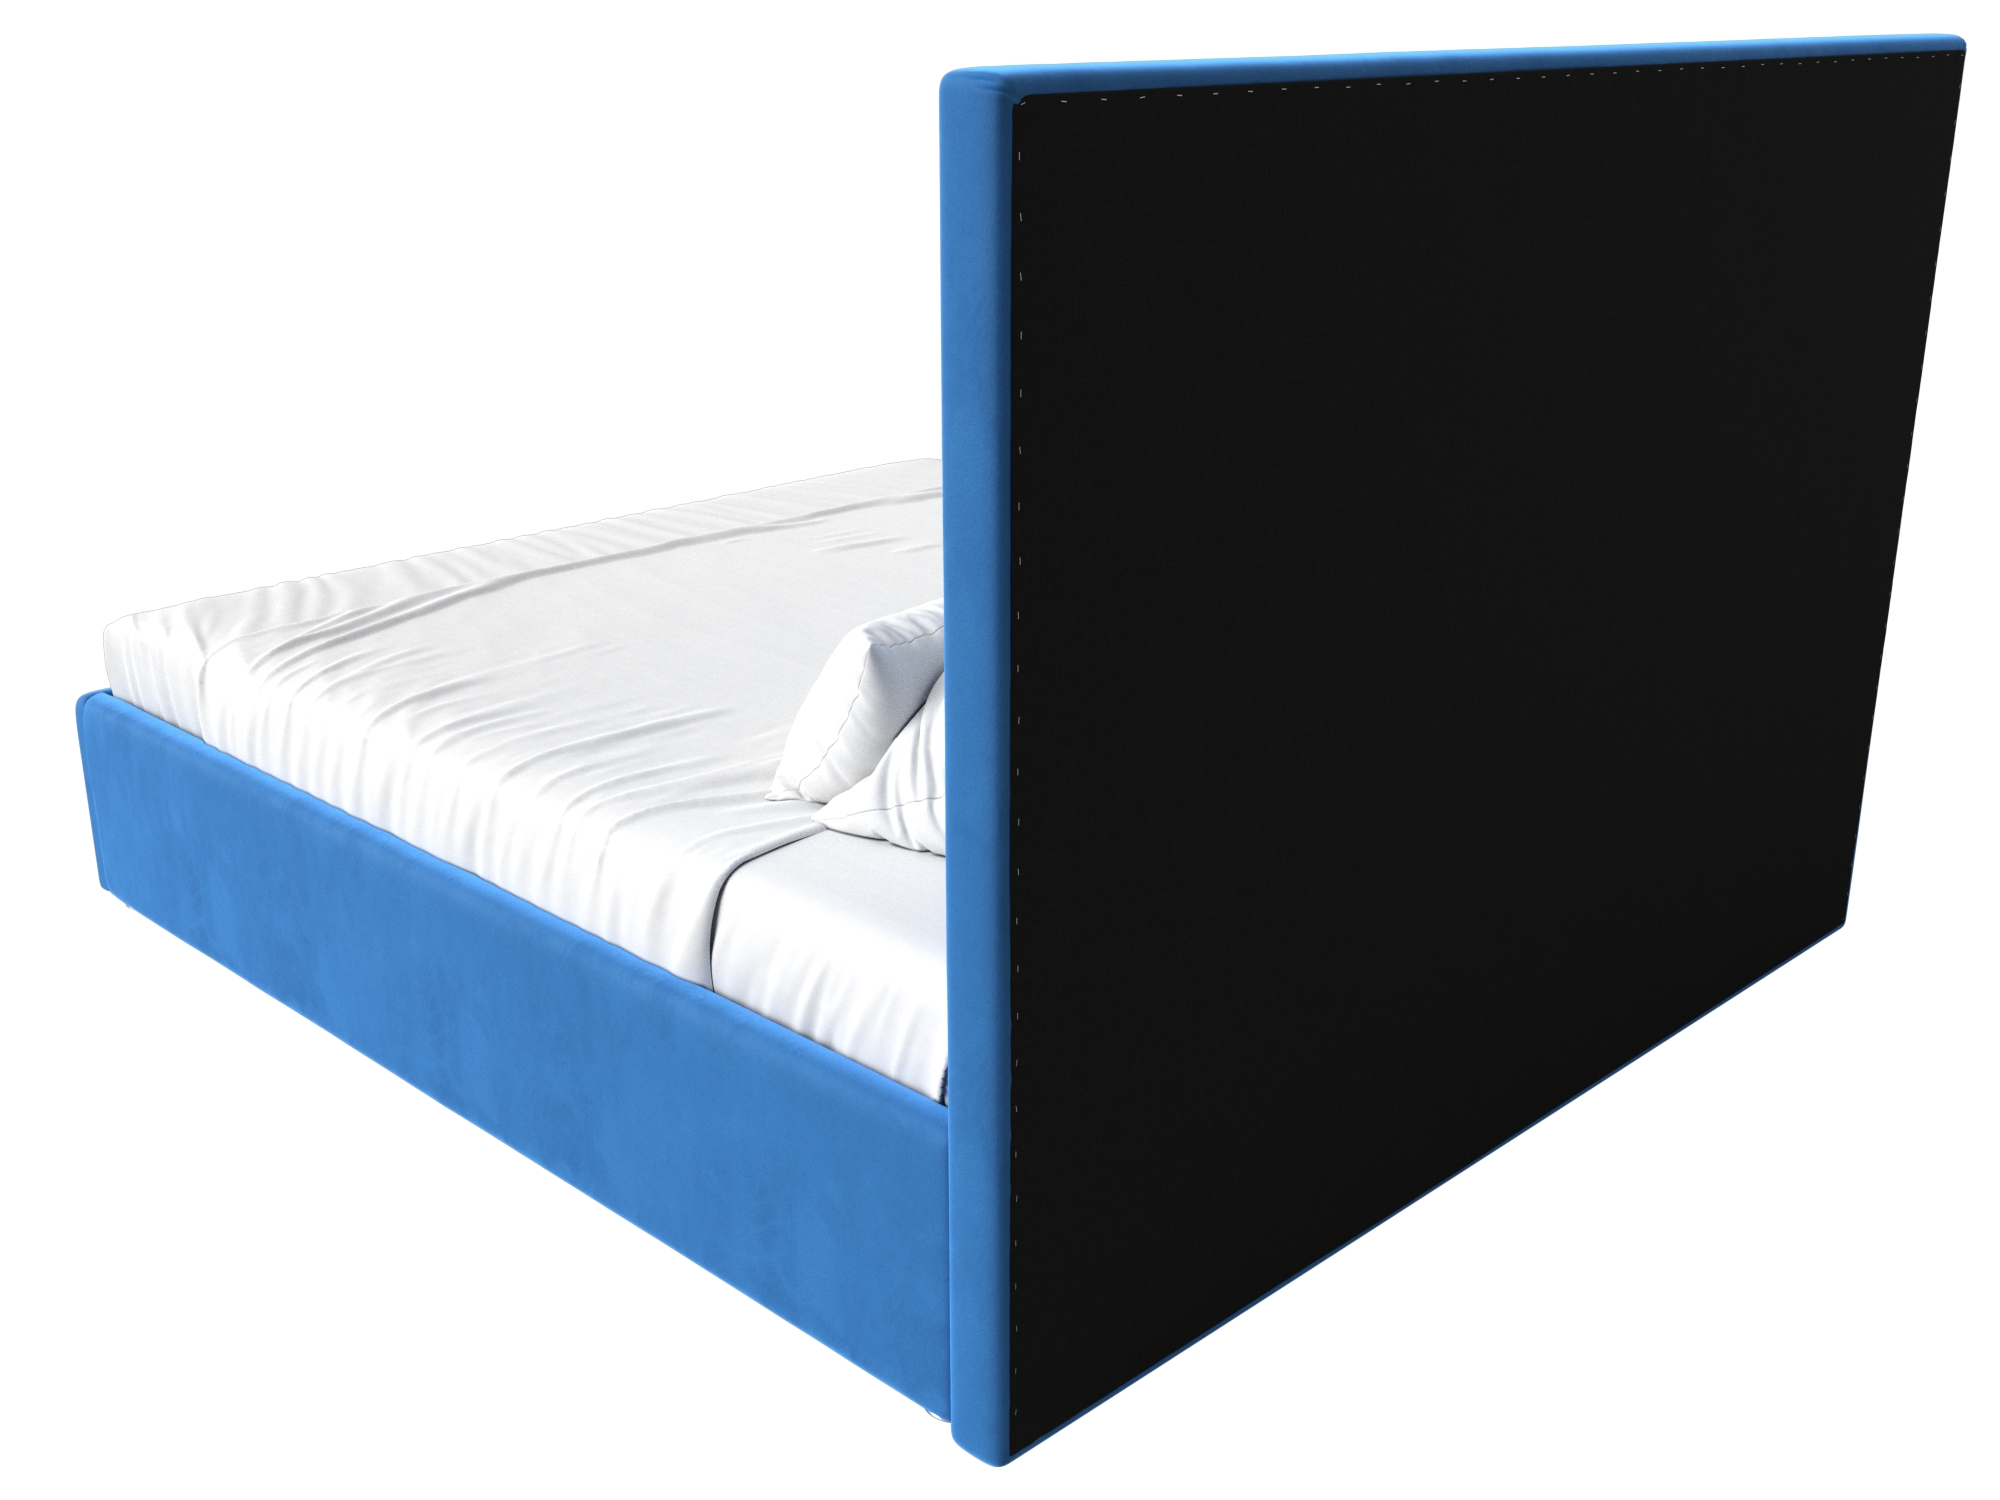 Интерьерная кровать Афродита 160 (Голубой)